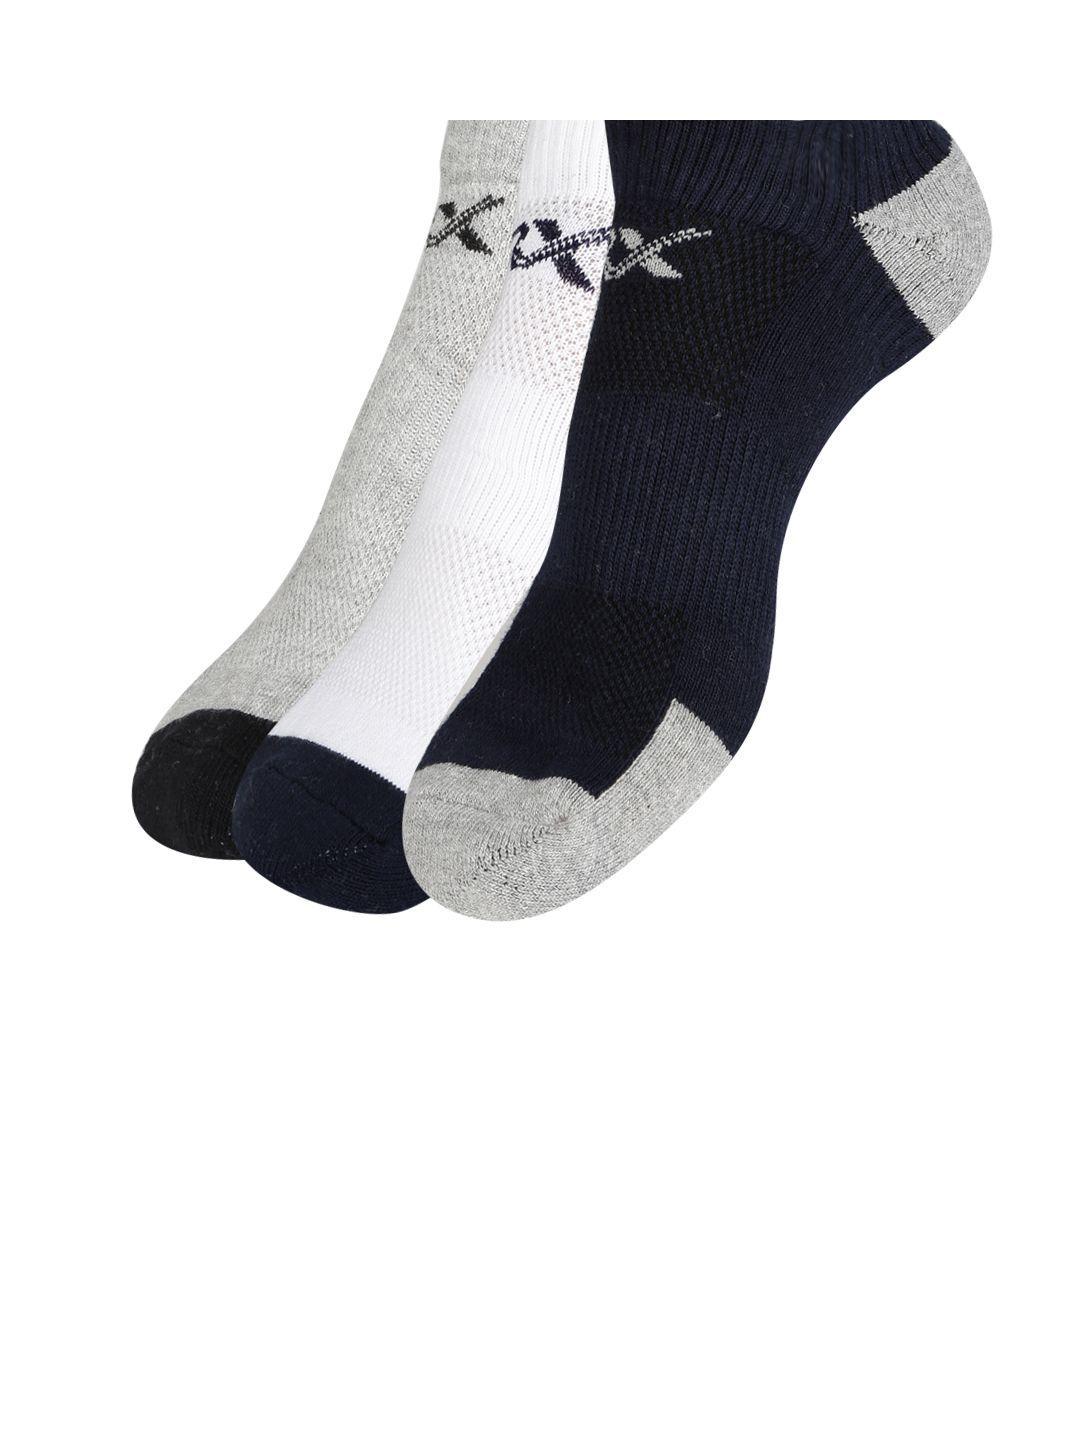 hrx by hrithik roshan men quarter length pack of 3 terry socks